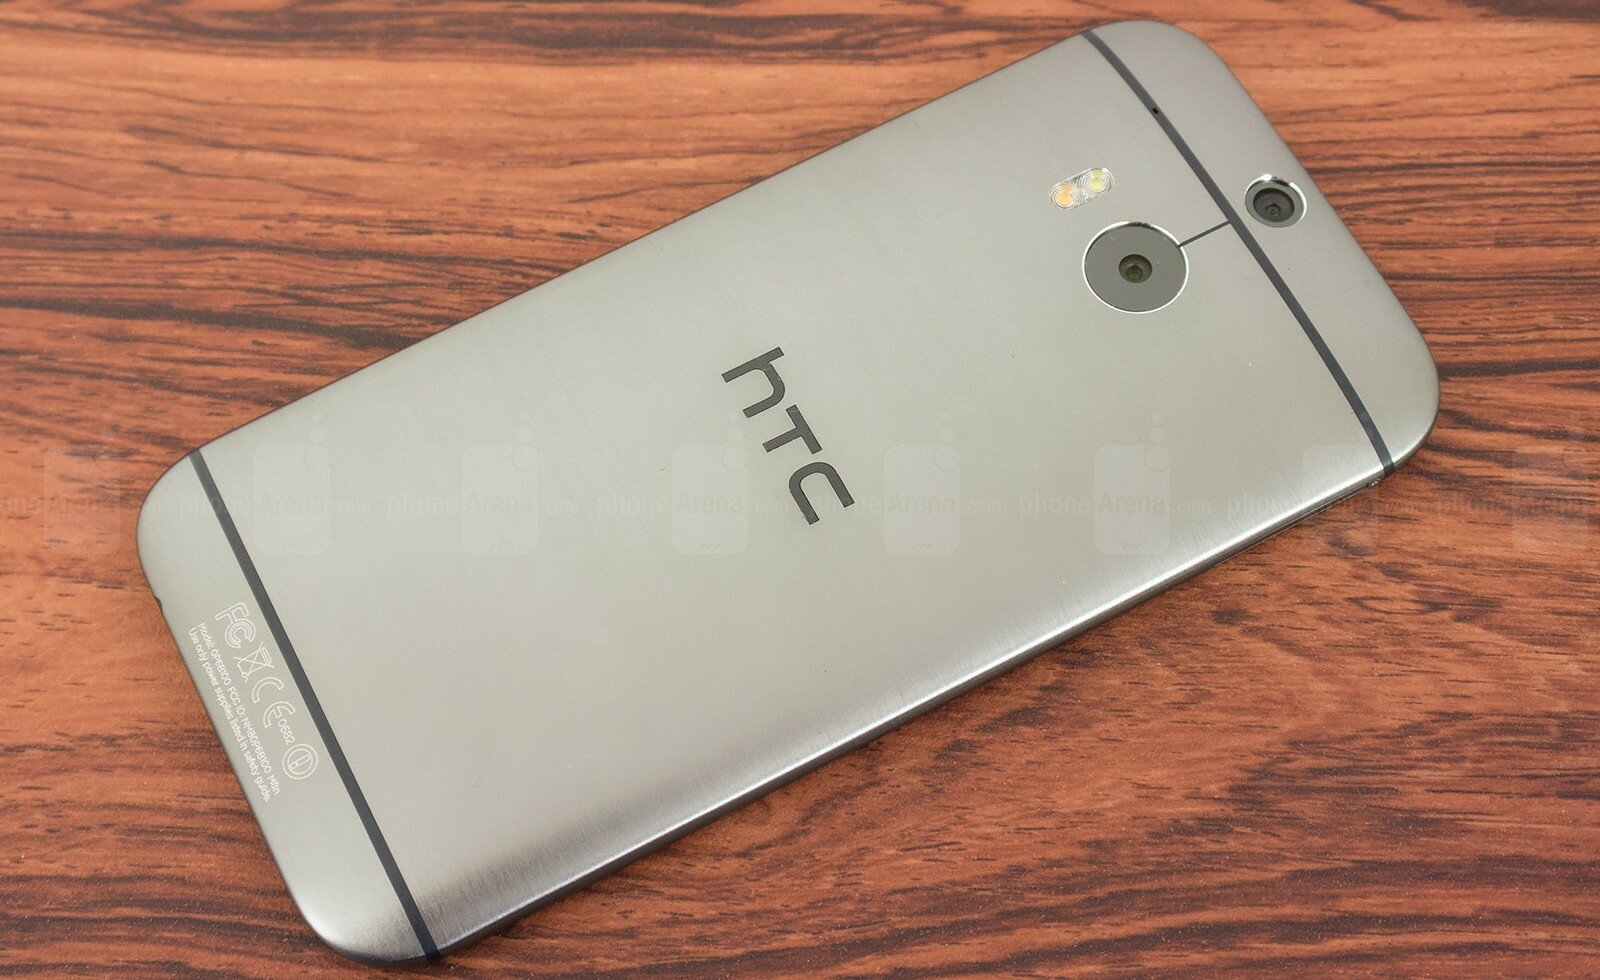 HTC претендует на 10% мирового рынка смартфонов - изображение